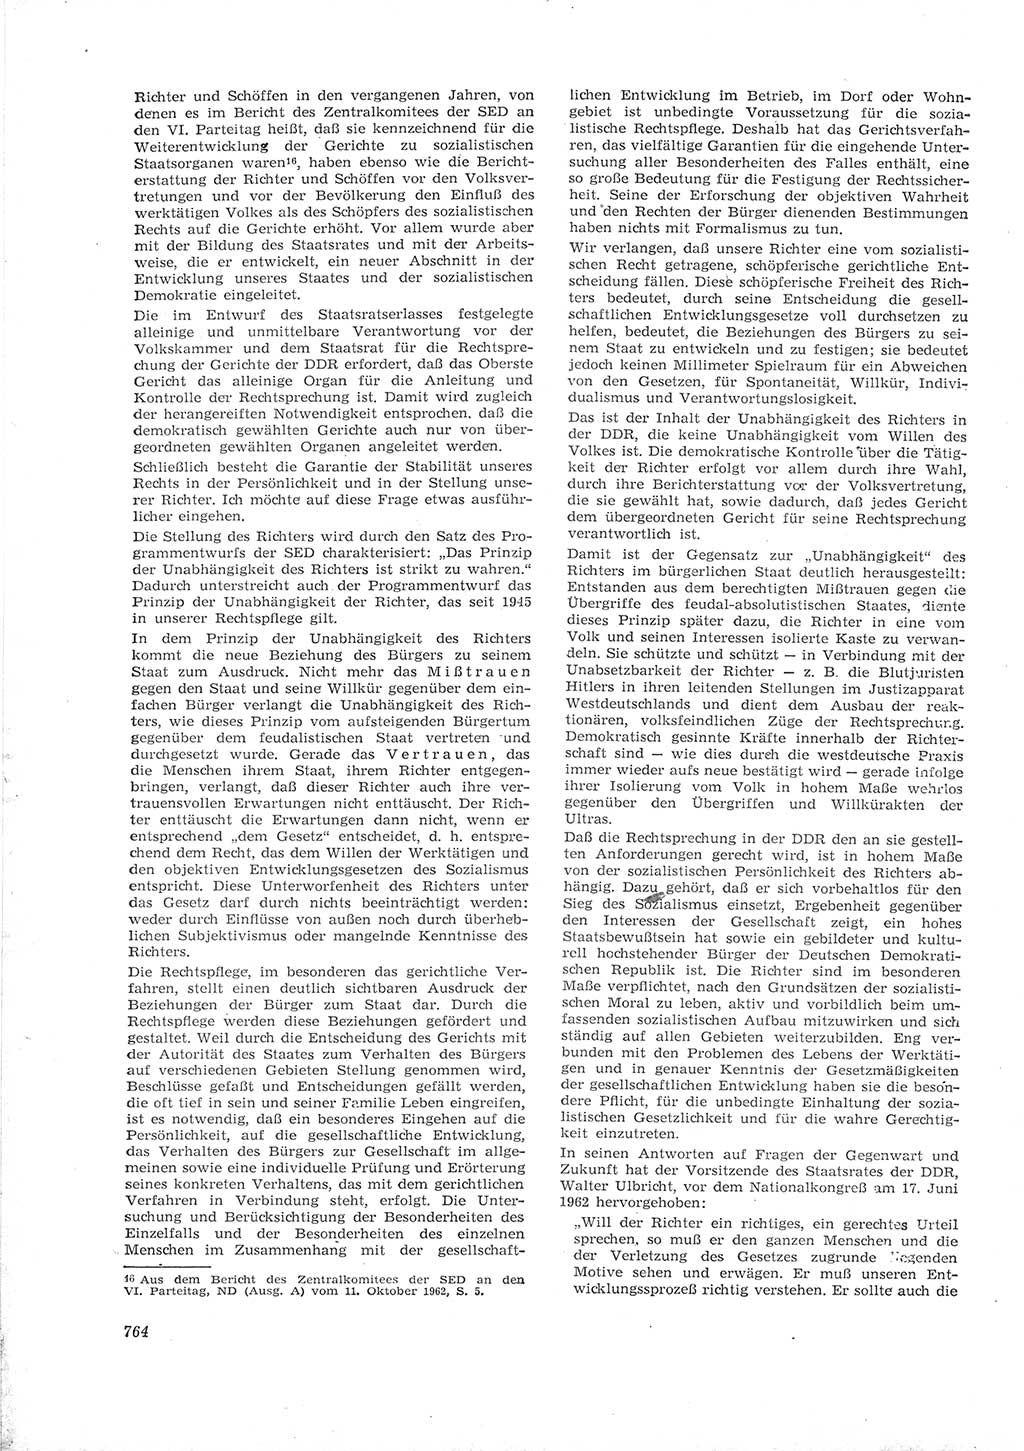 Neue Justiz (NJ), Zeitschrift für Recht und Rechtswissenschaft [Deutsche Demokratische Republik (DDR)], 16. Jahrgang 1962, Seite 764 (NJ DDR 1962, S. 764)